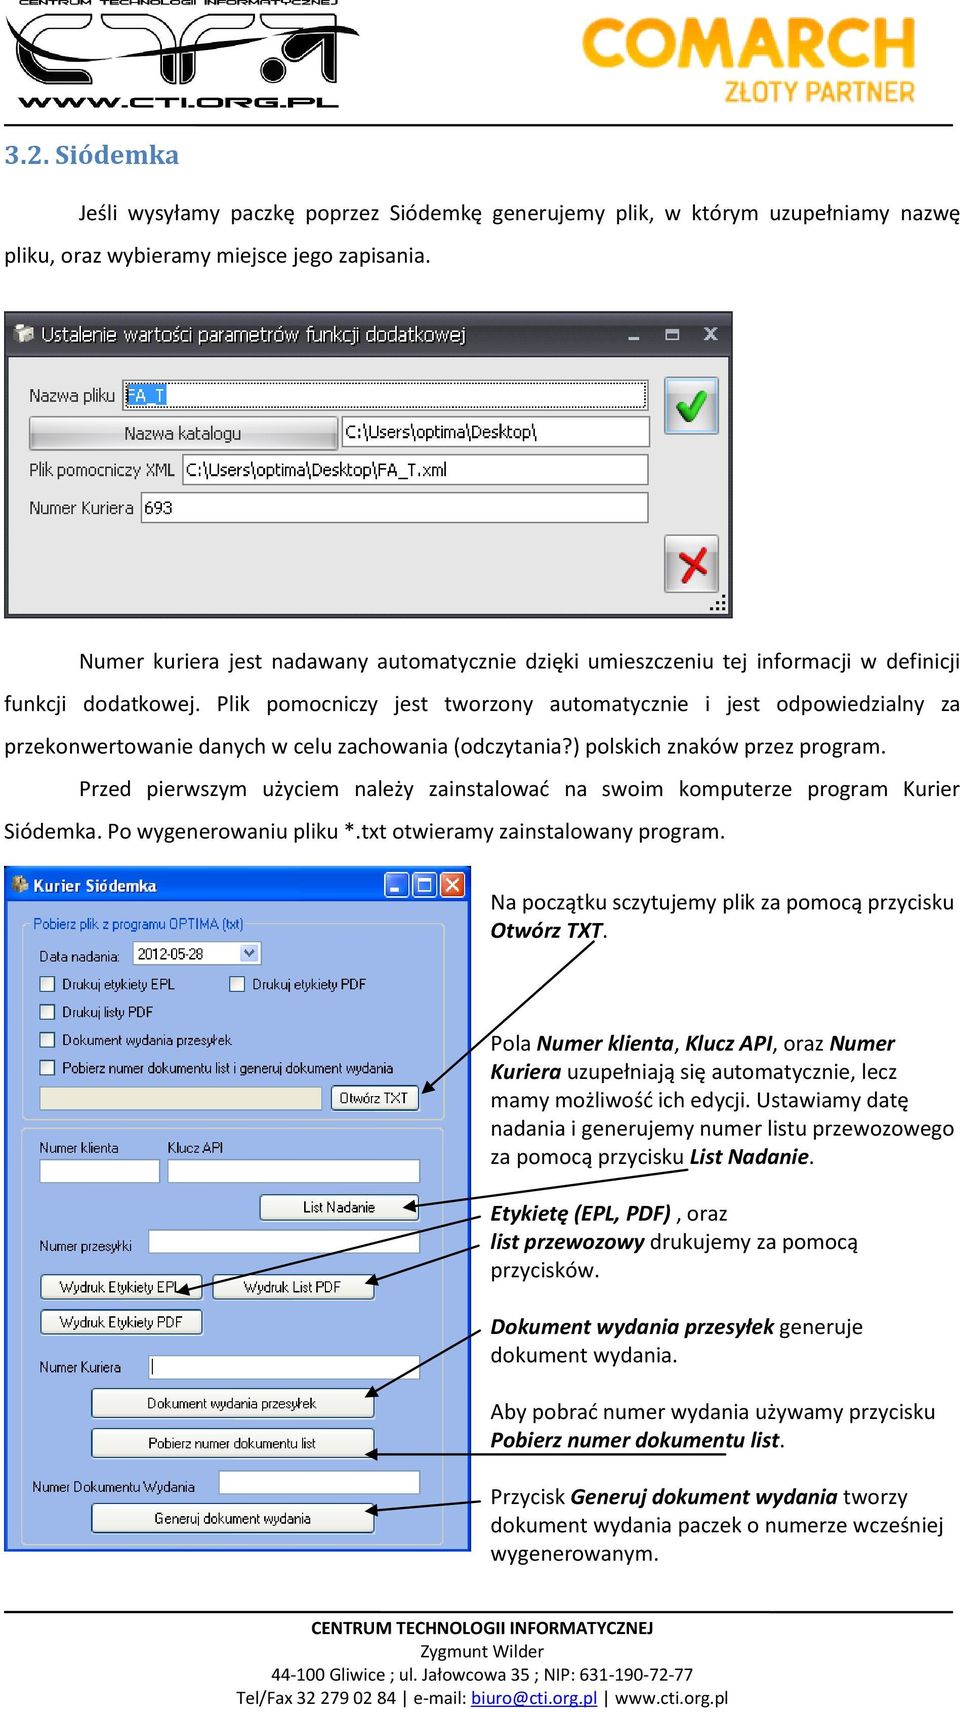 Plik pomocniczy jest tworzony automatycznie i jest odpowiedzialny za przekonwertowanie danych w celu zachowania (odczytania?) polskich znaków przez program.